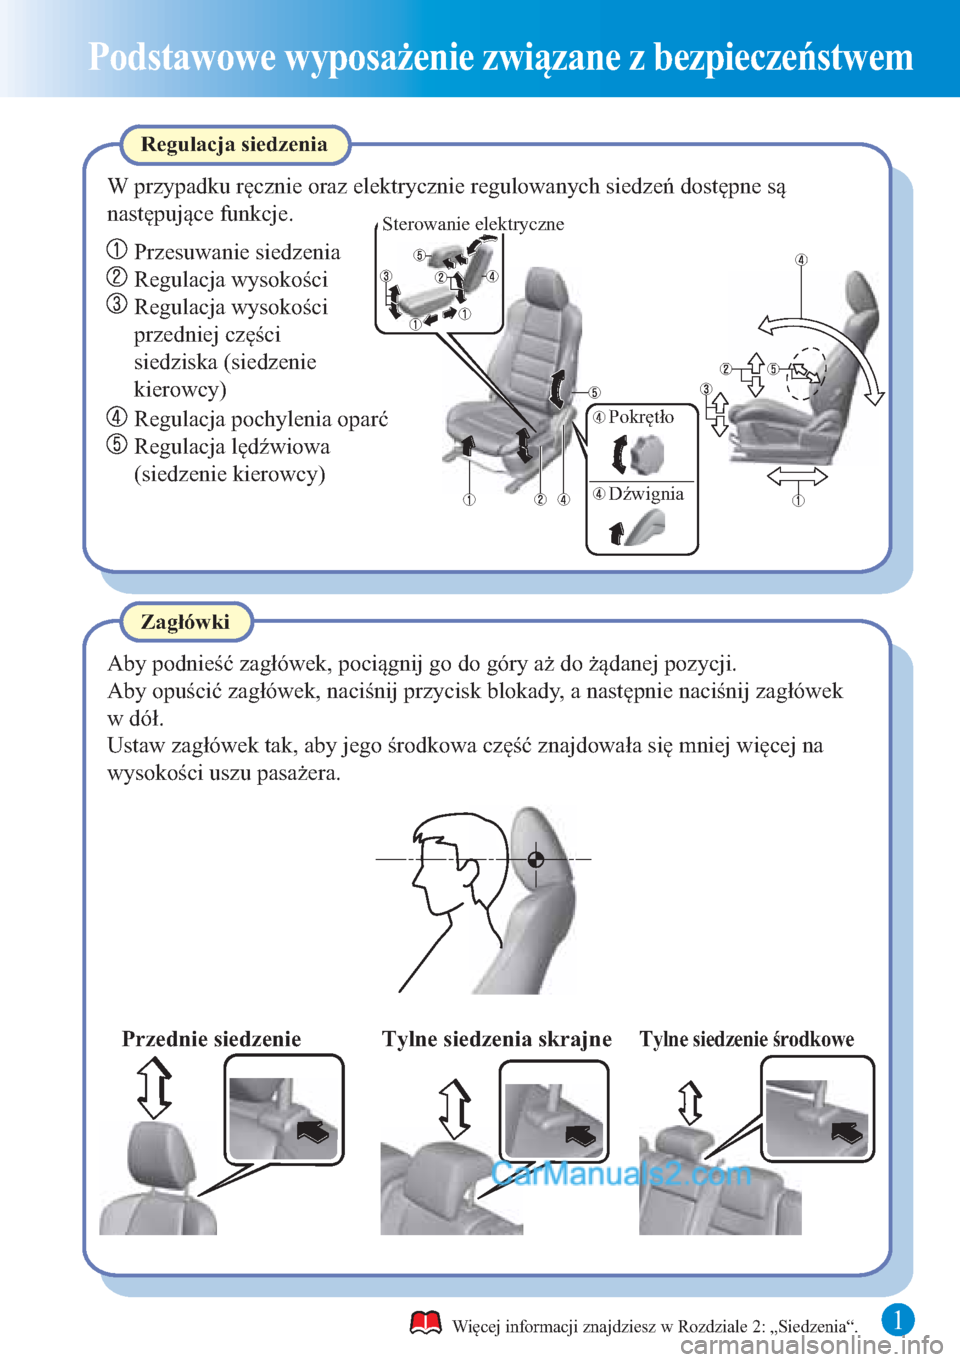 MAZDA MODEL CX-5 2015  Krótki Przewodnik (in Polish) 1
Podstawowe wyposażenie związane z bezpieczeństwem
Aby podnieść zagłówek, pociągnij go do góry aż do żądanej pozycji.
Zagłówki Regulacja siedzenia
W przypadku ręcznie oraz elektrycznie